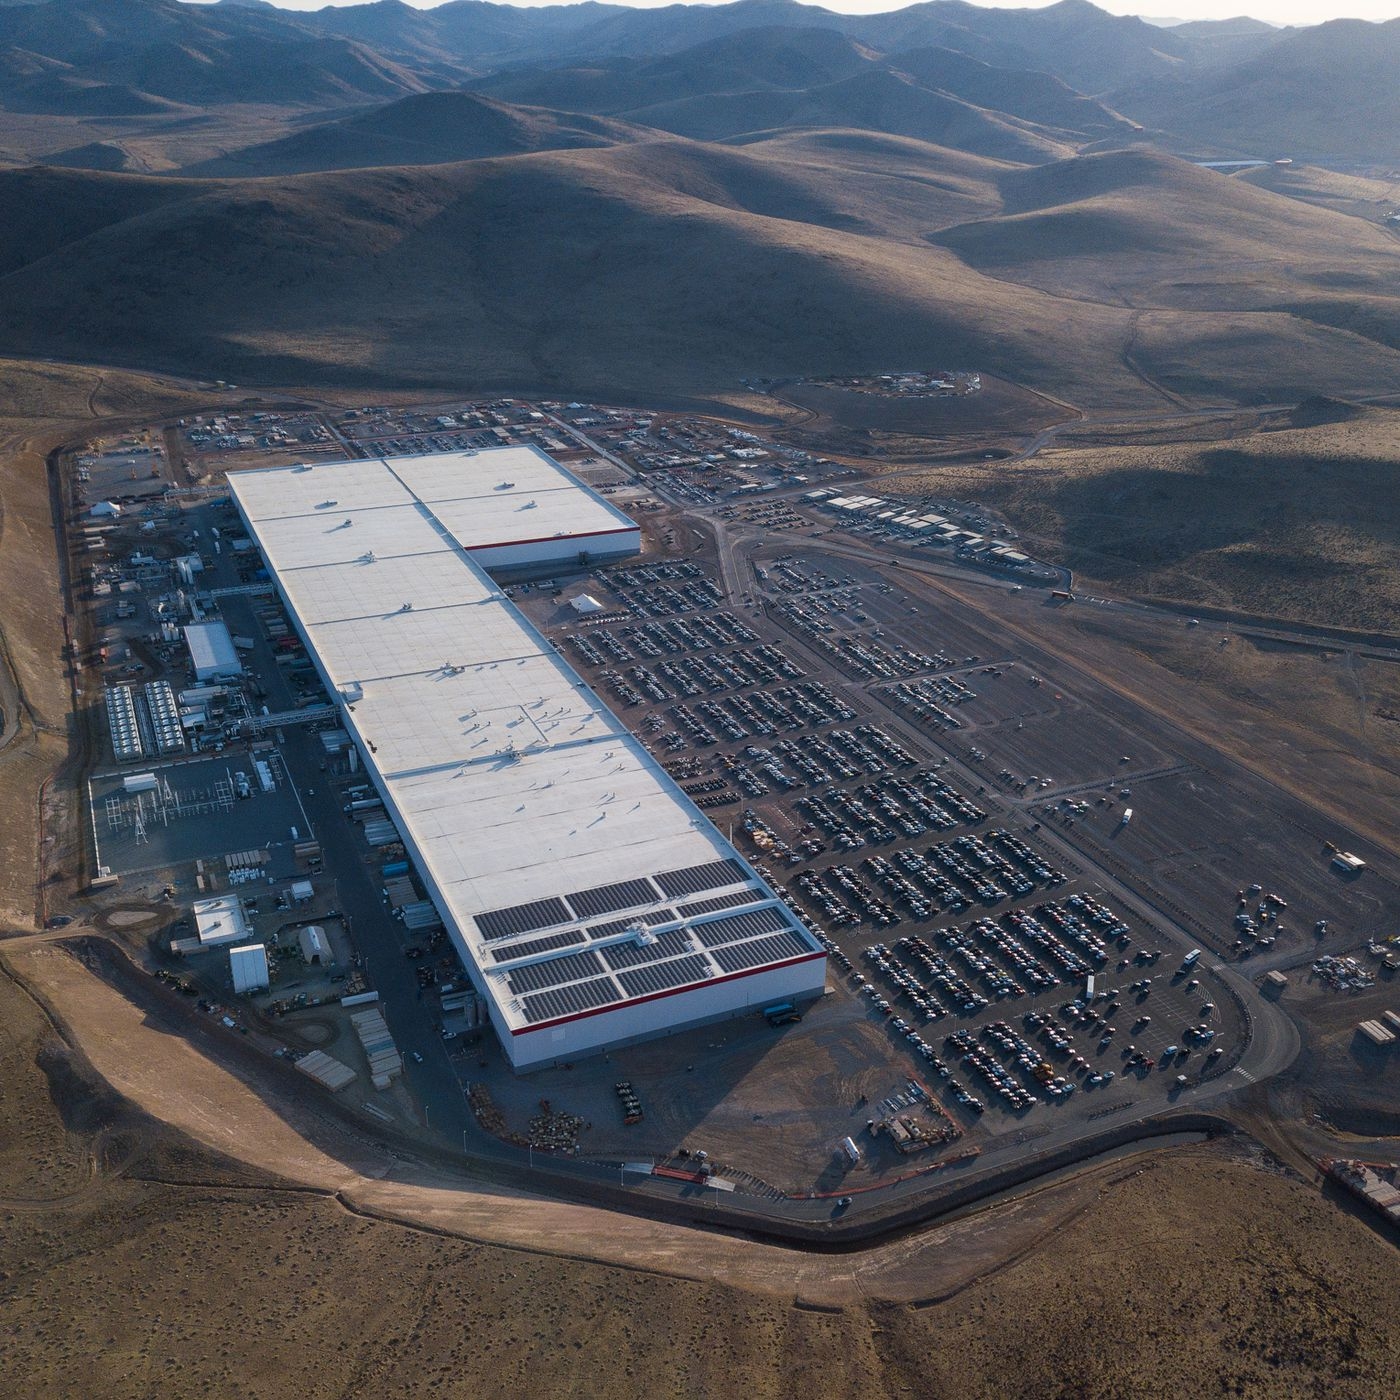 Phác họa 'siêu nhà máy' Giga của VinFast: Quy mô khủng không kém Tesla